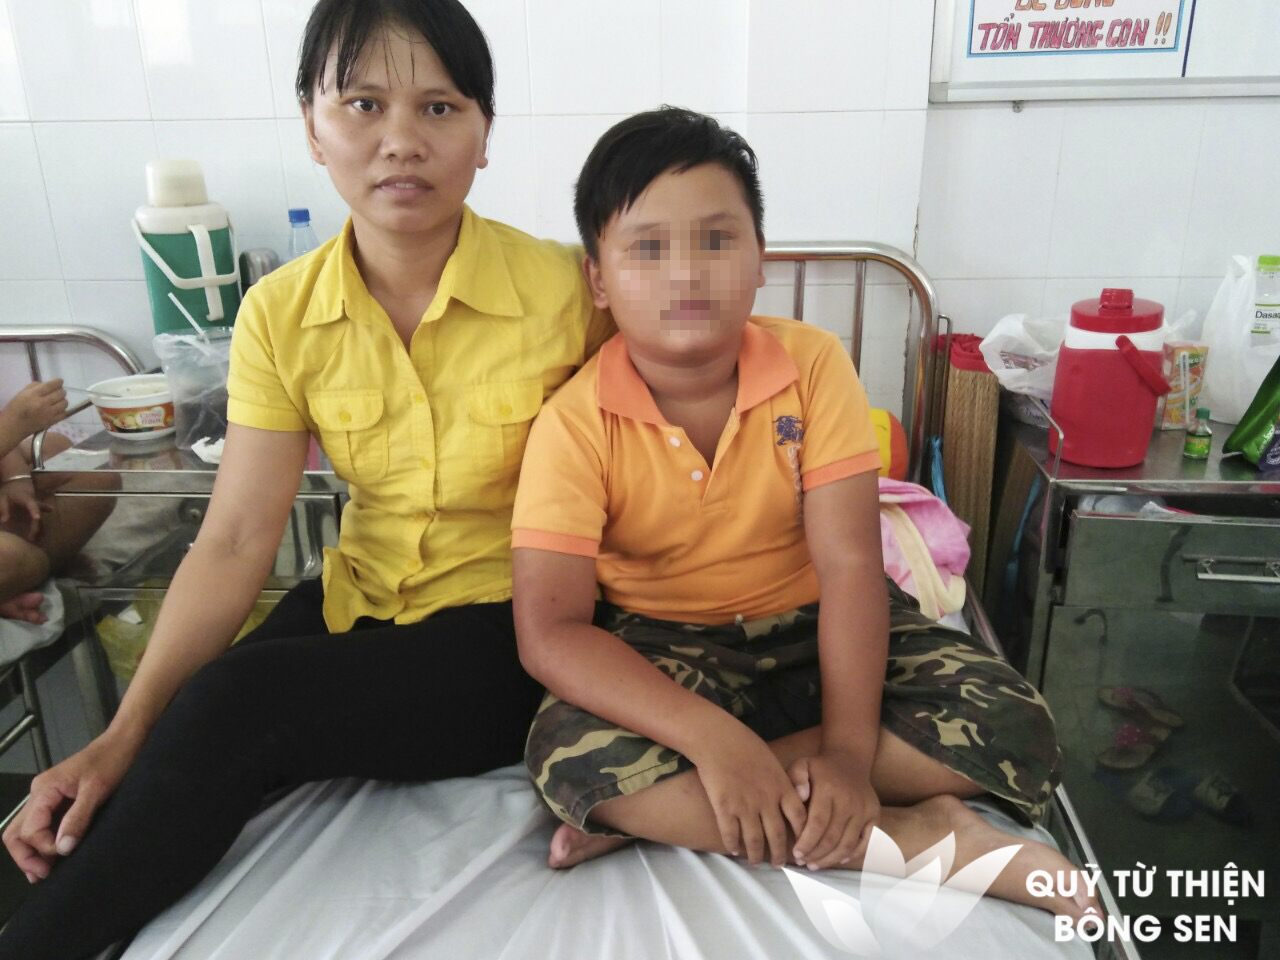 Kỳ 403: Bé Huỳnh Văn Hiếu (sinh năm 2009) quê Bình Định, rò động tĩnh mạch, hỗ trợ 12 triệu đồng ngày 08/03/2019